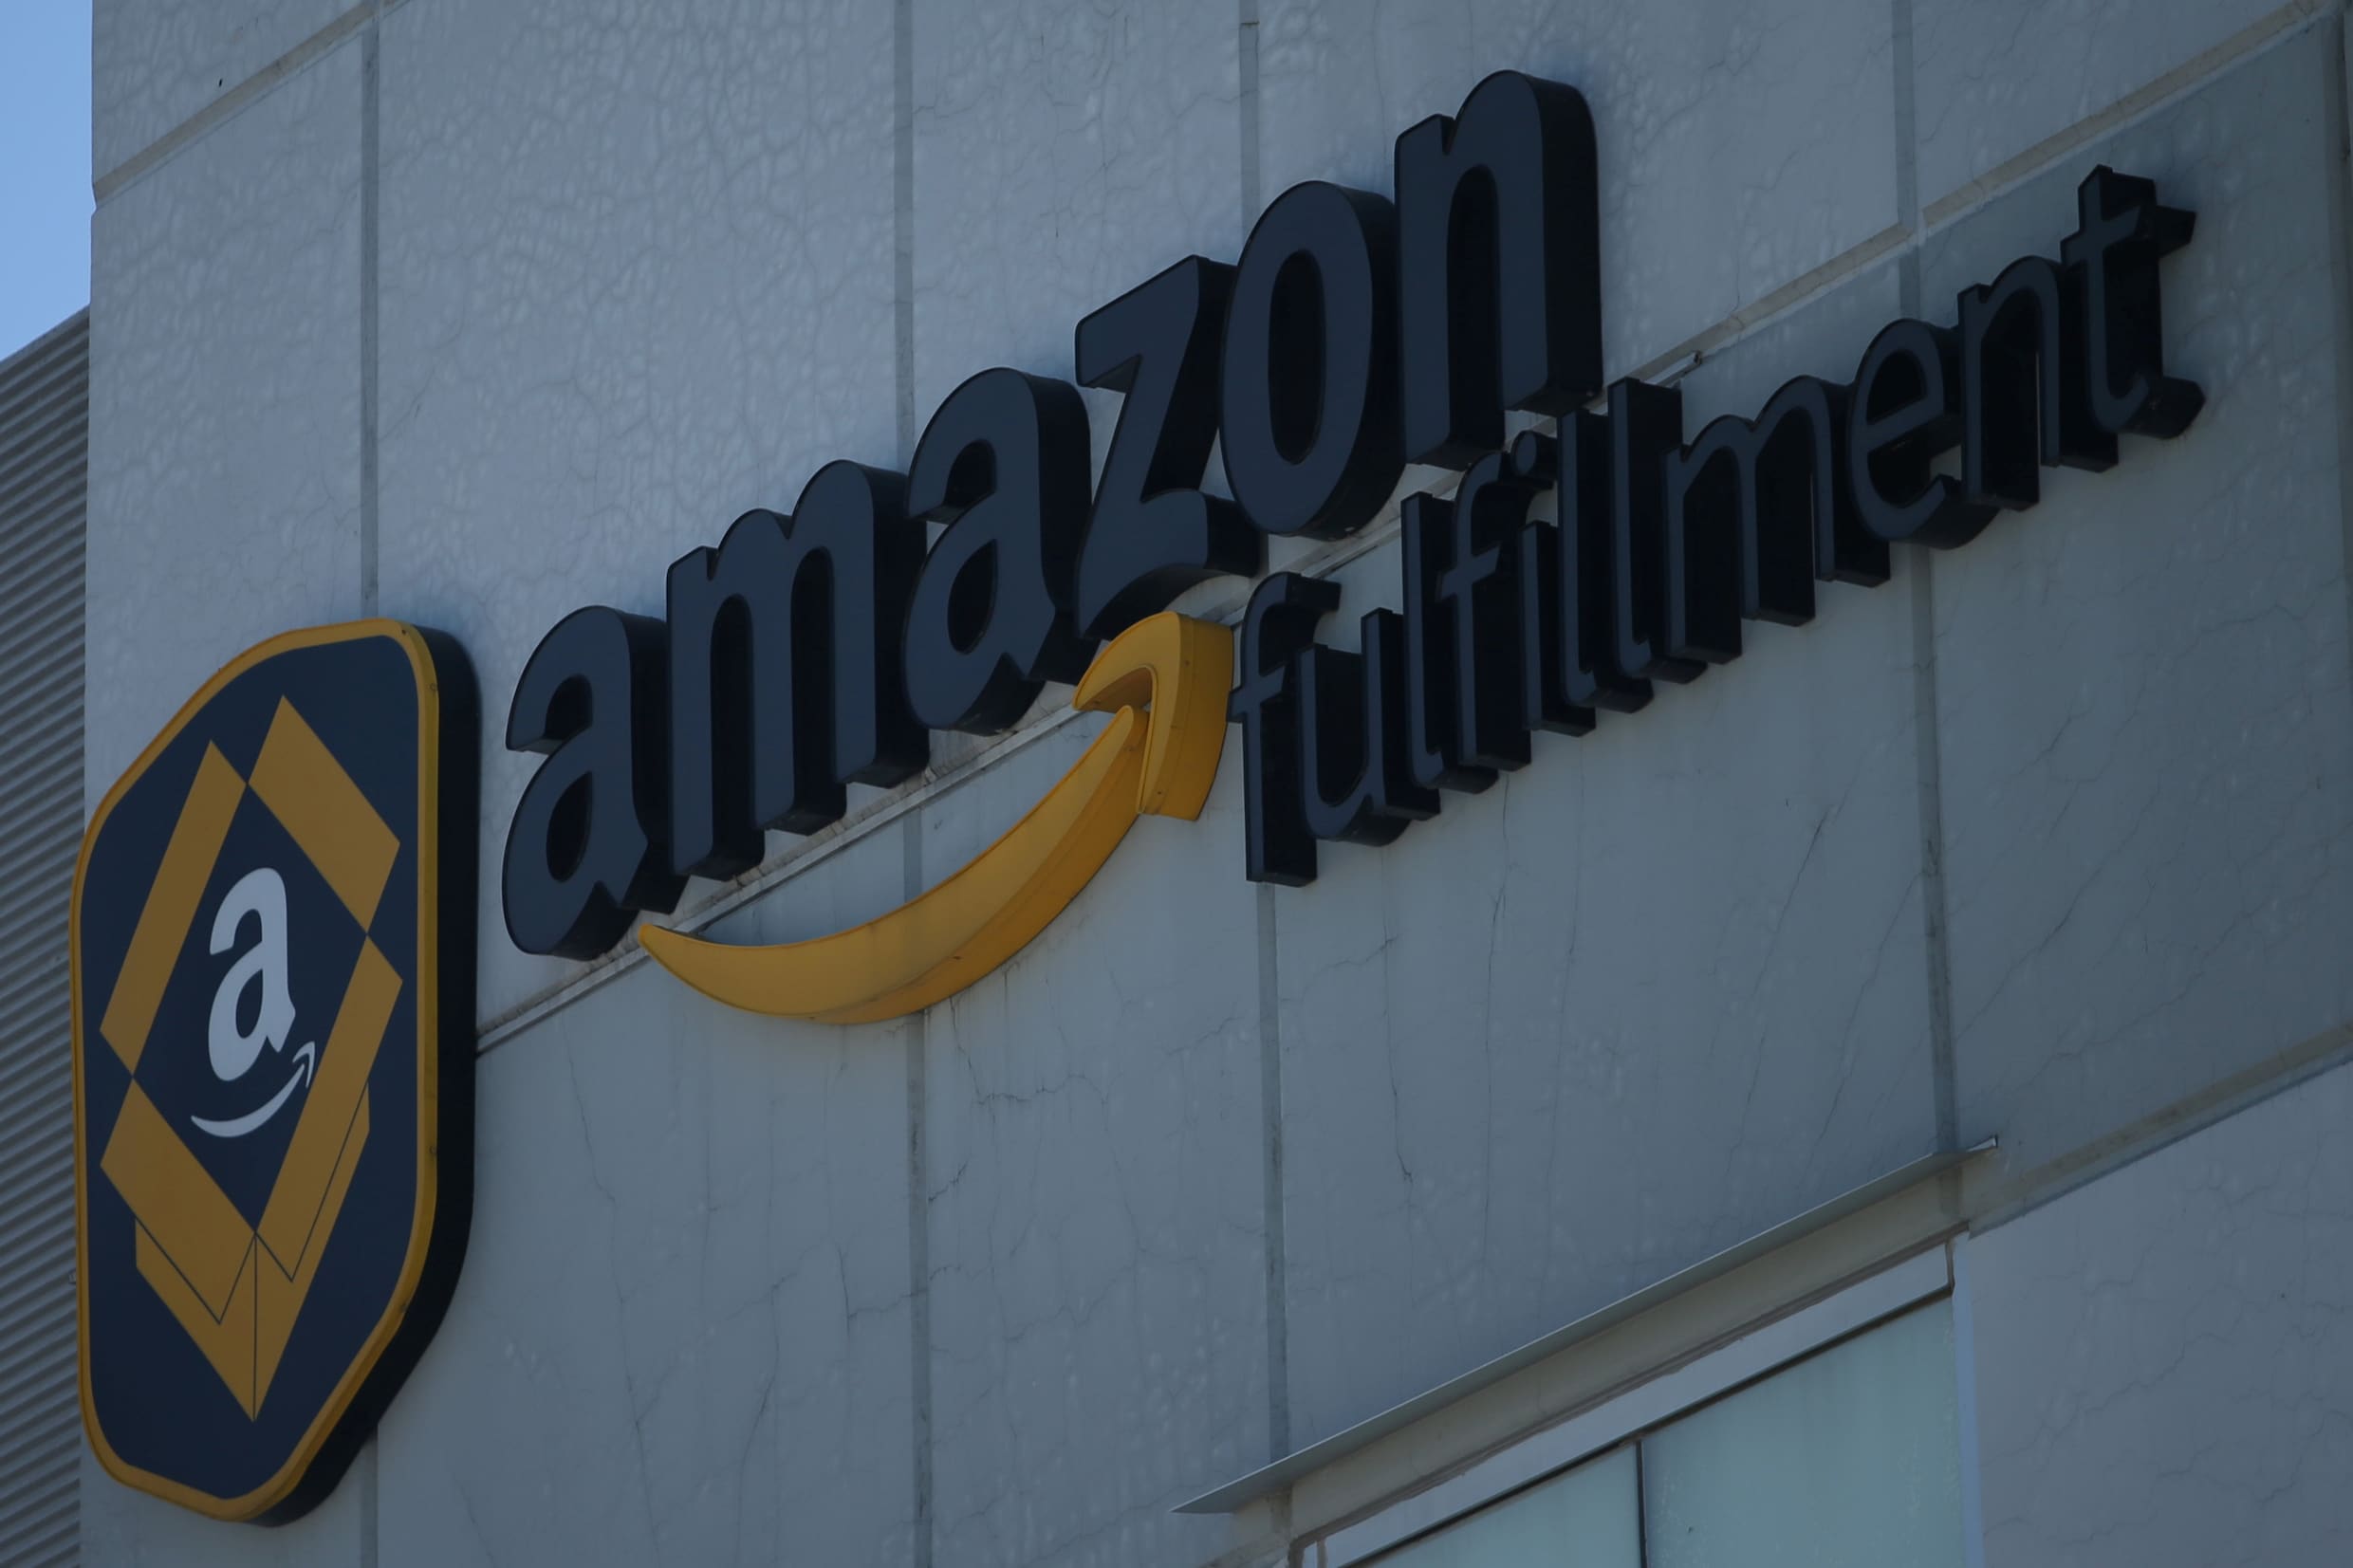 Suggereert Amazon ingrediënten voor maken van bommen?